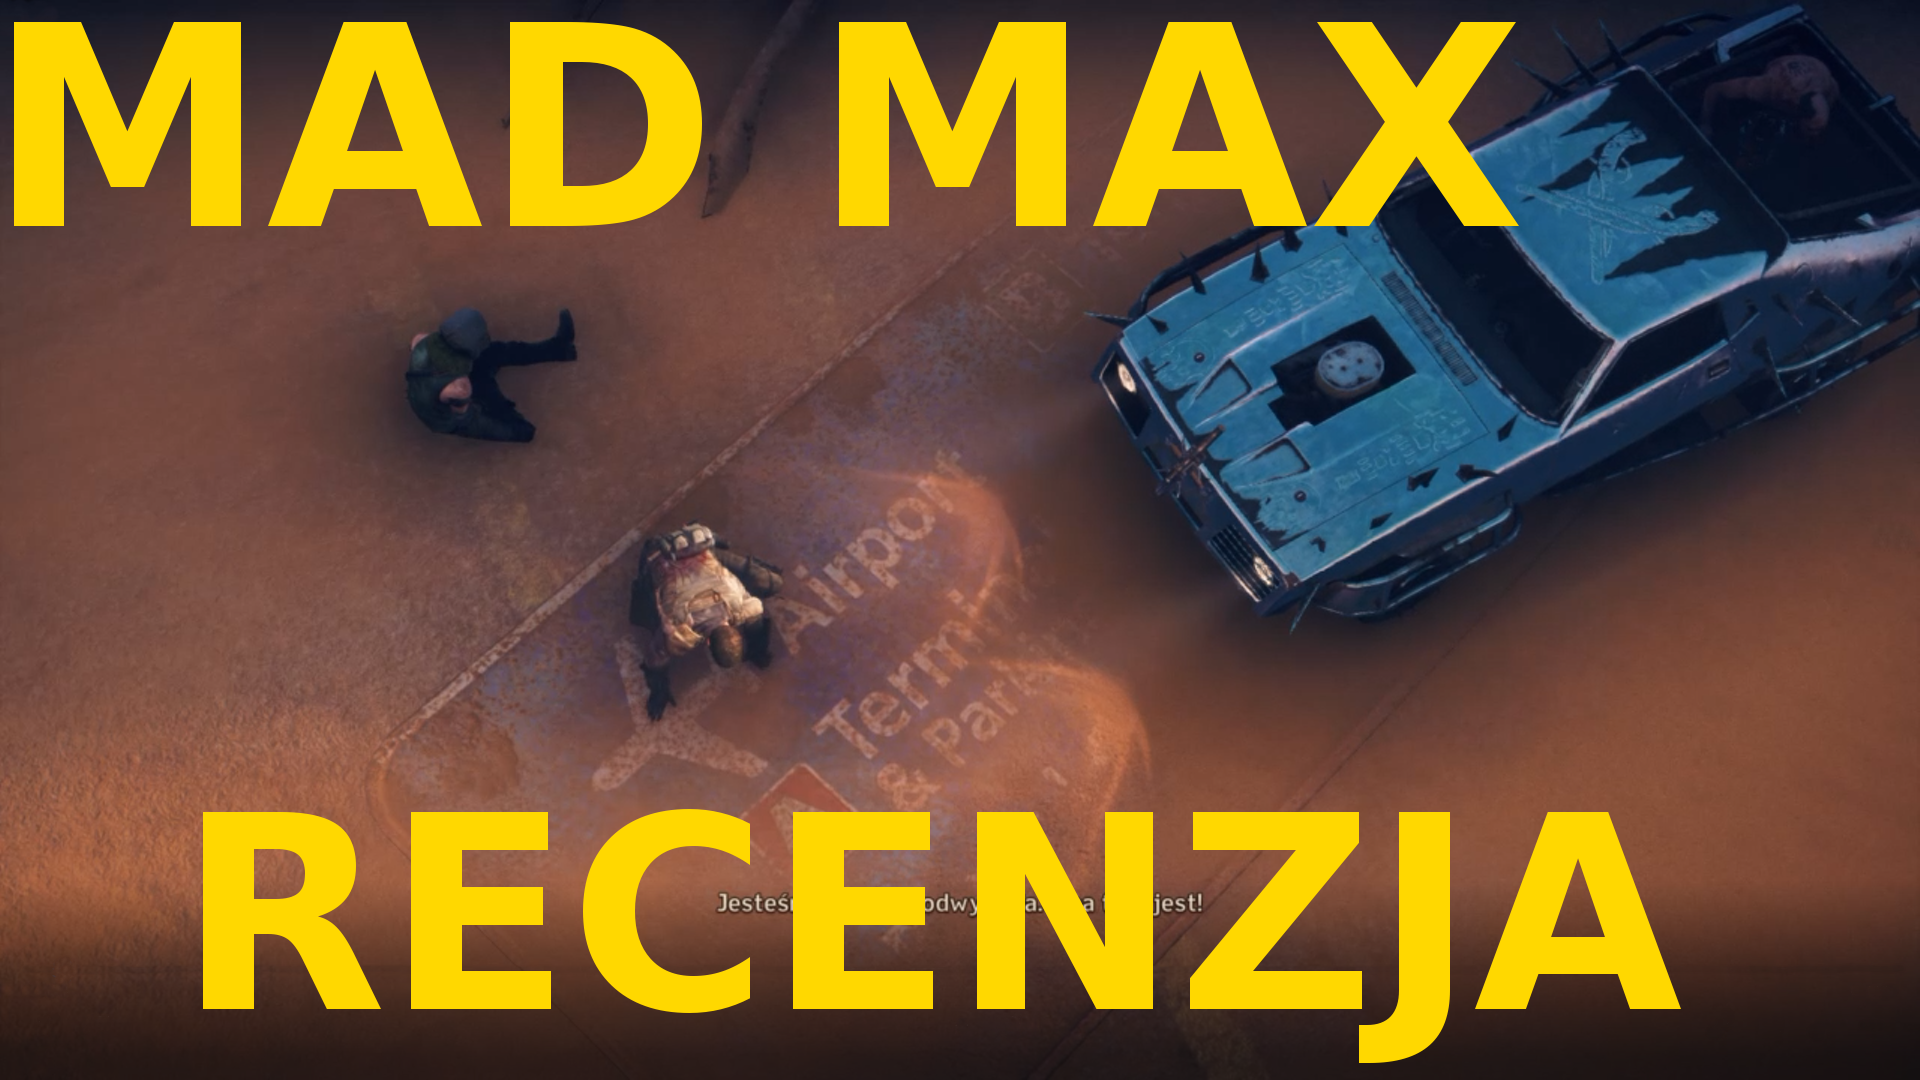 Recenzja Mad Max